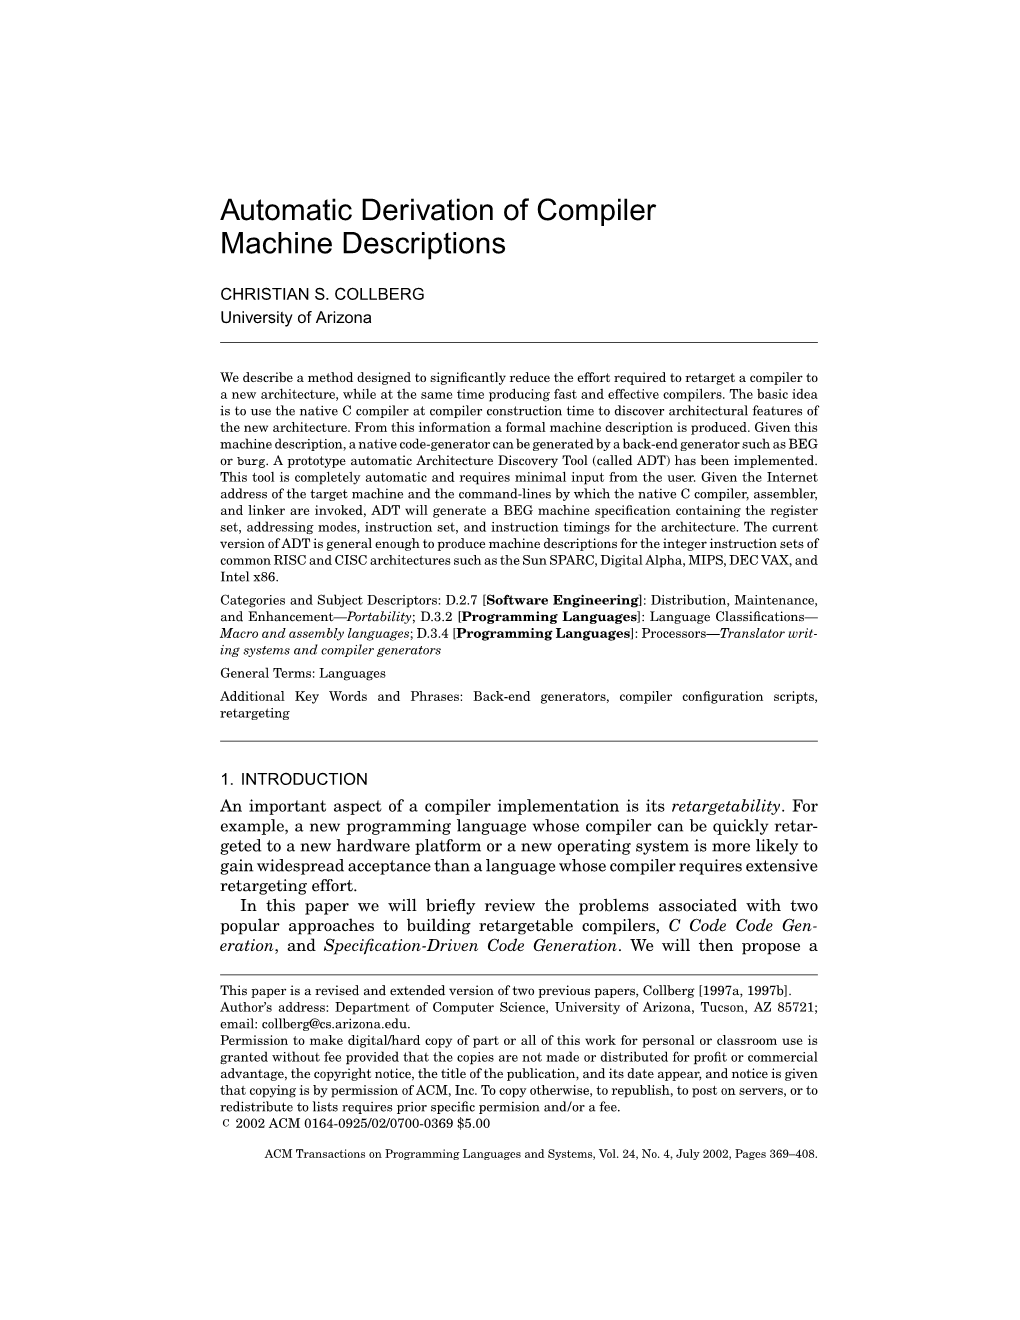 Automatic Derivation of Compiler Machine Descriptions